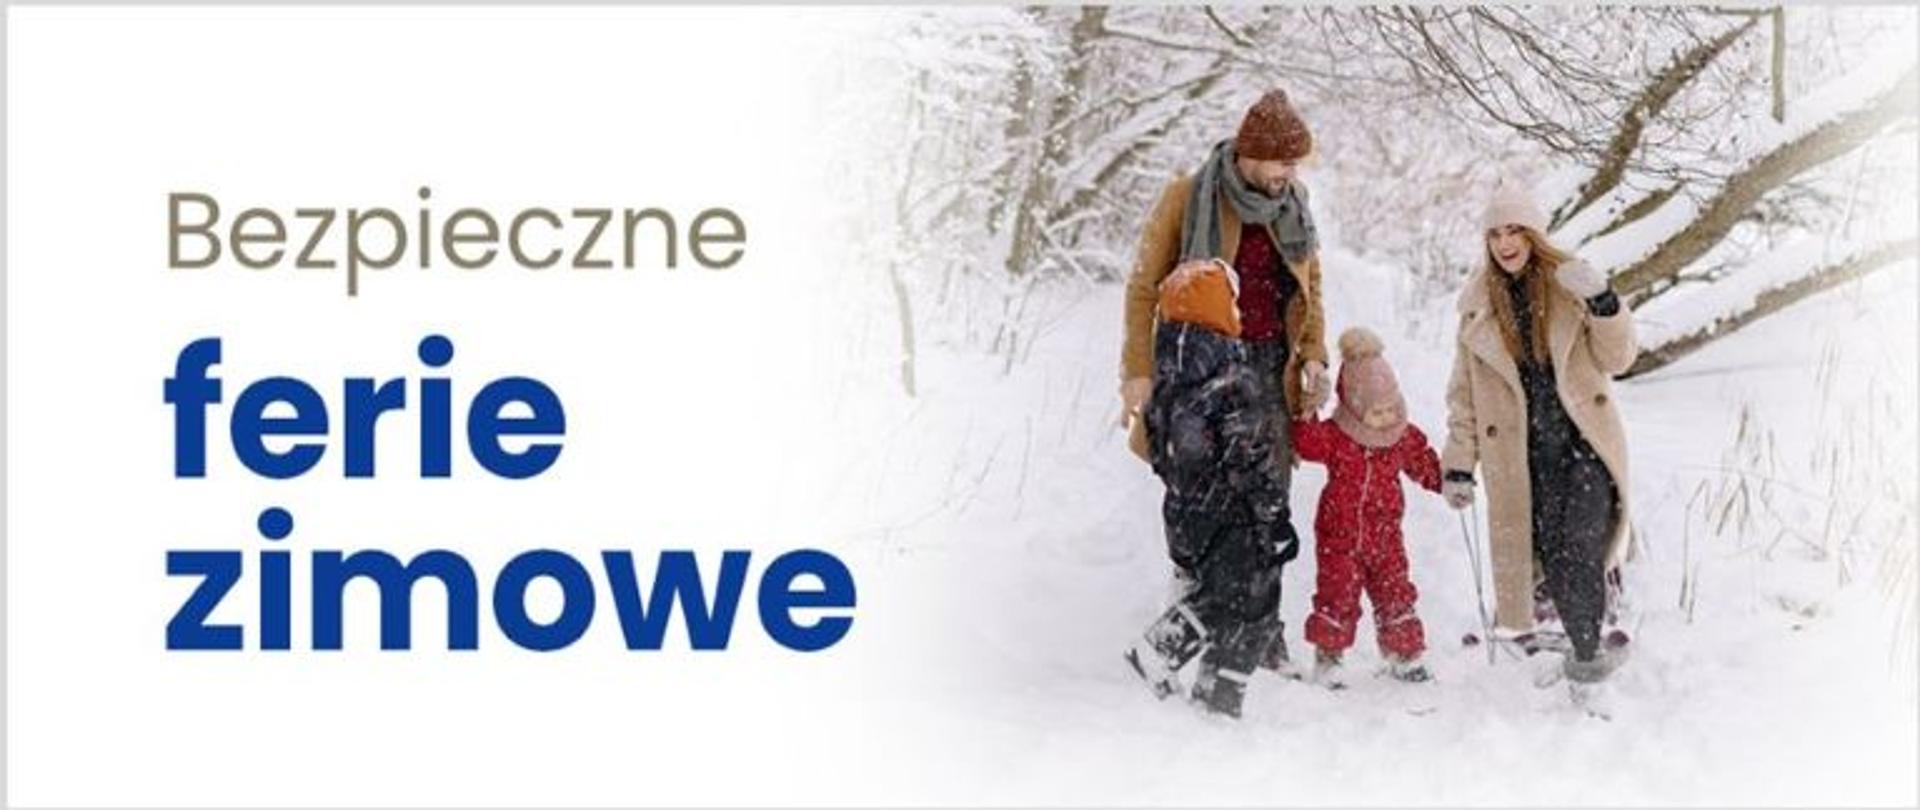 Dwoje dorosłych i dwoje dzieci w zimowych ubraniach w zimowej scenerii. Napis: Bezpieczne ferie zimowe